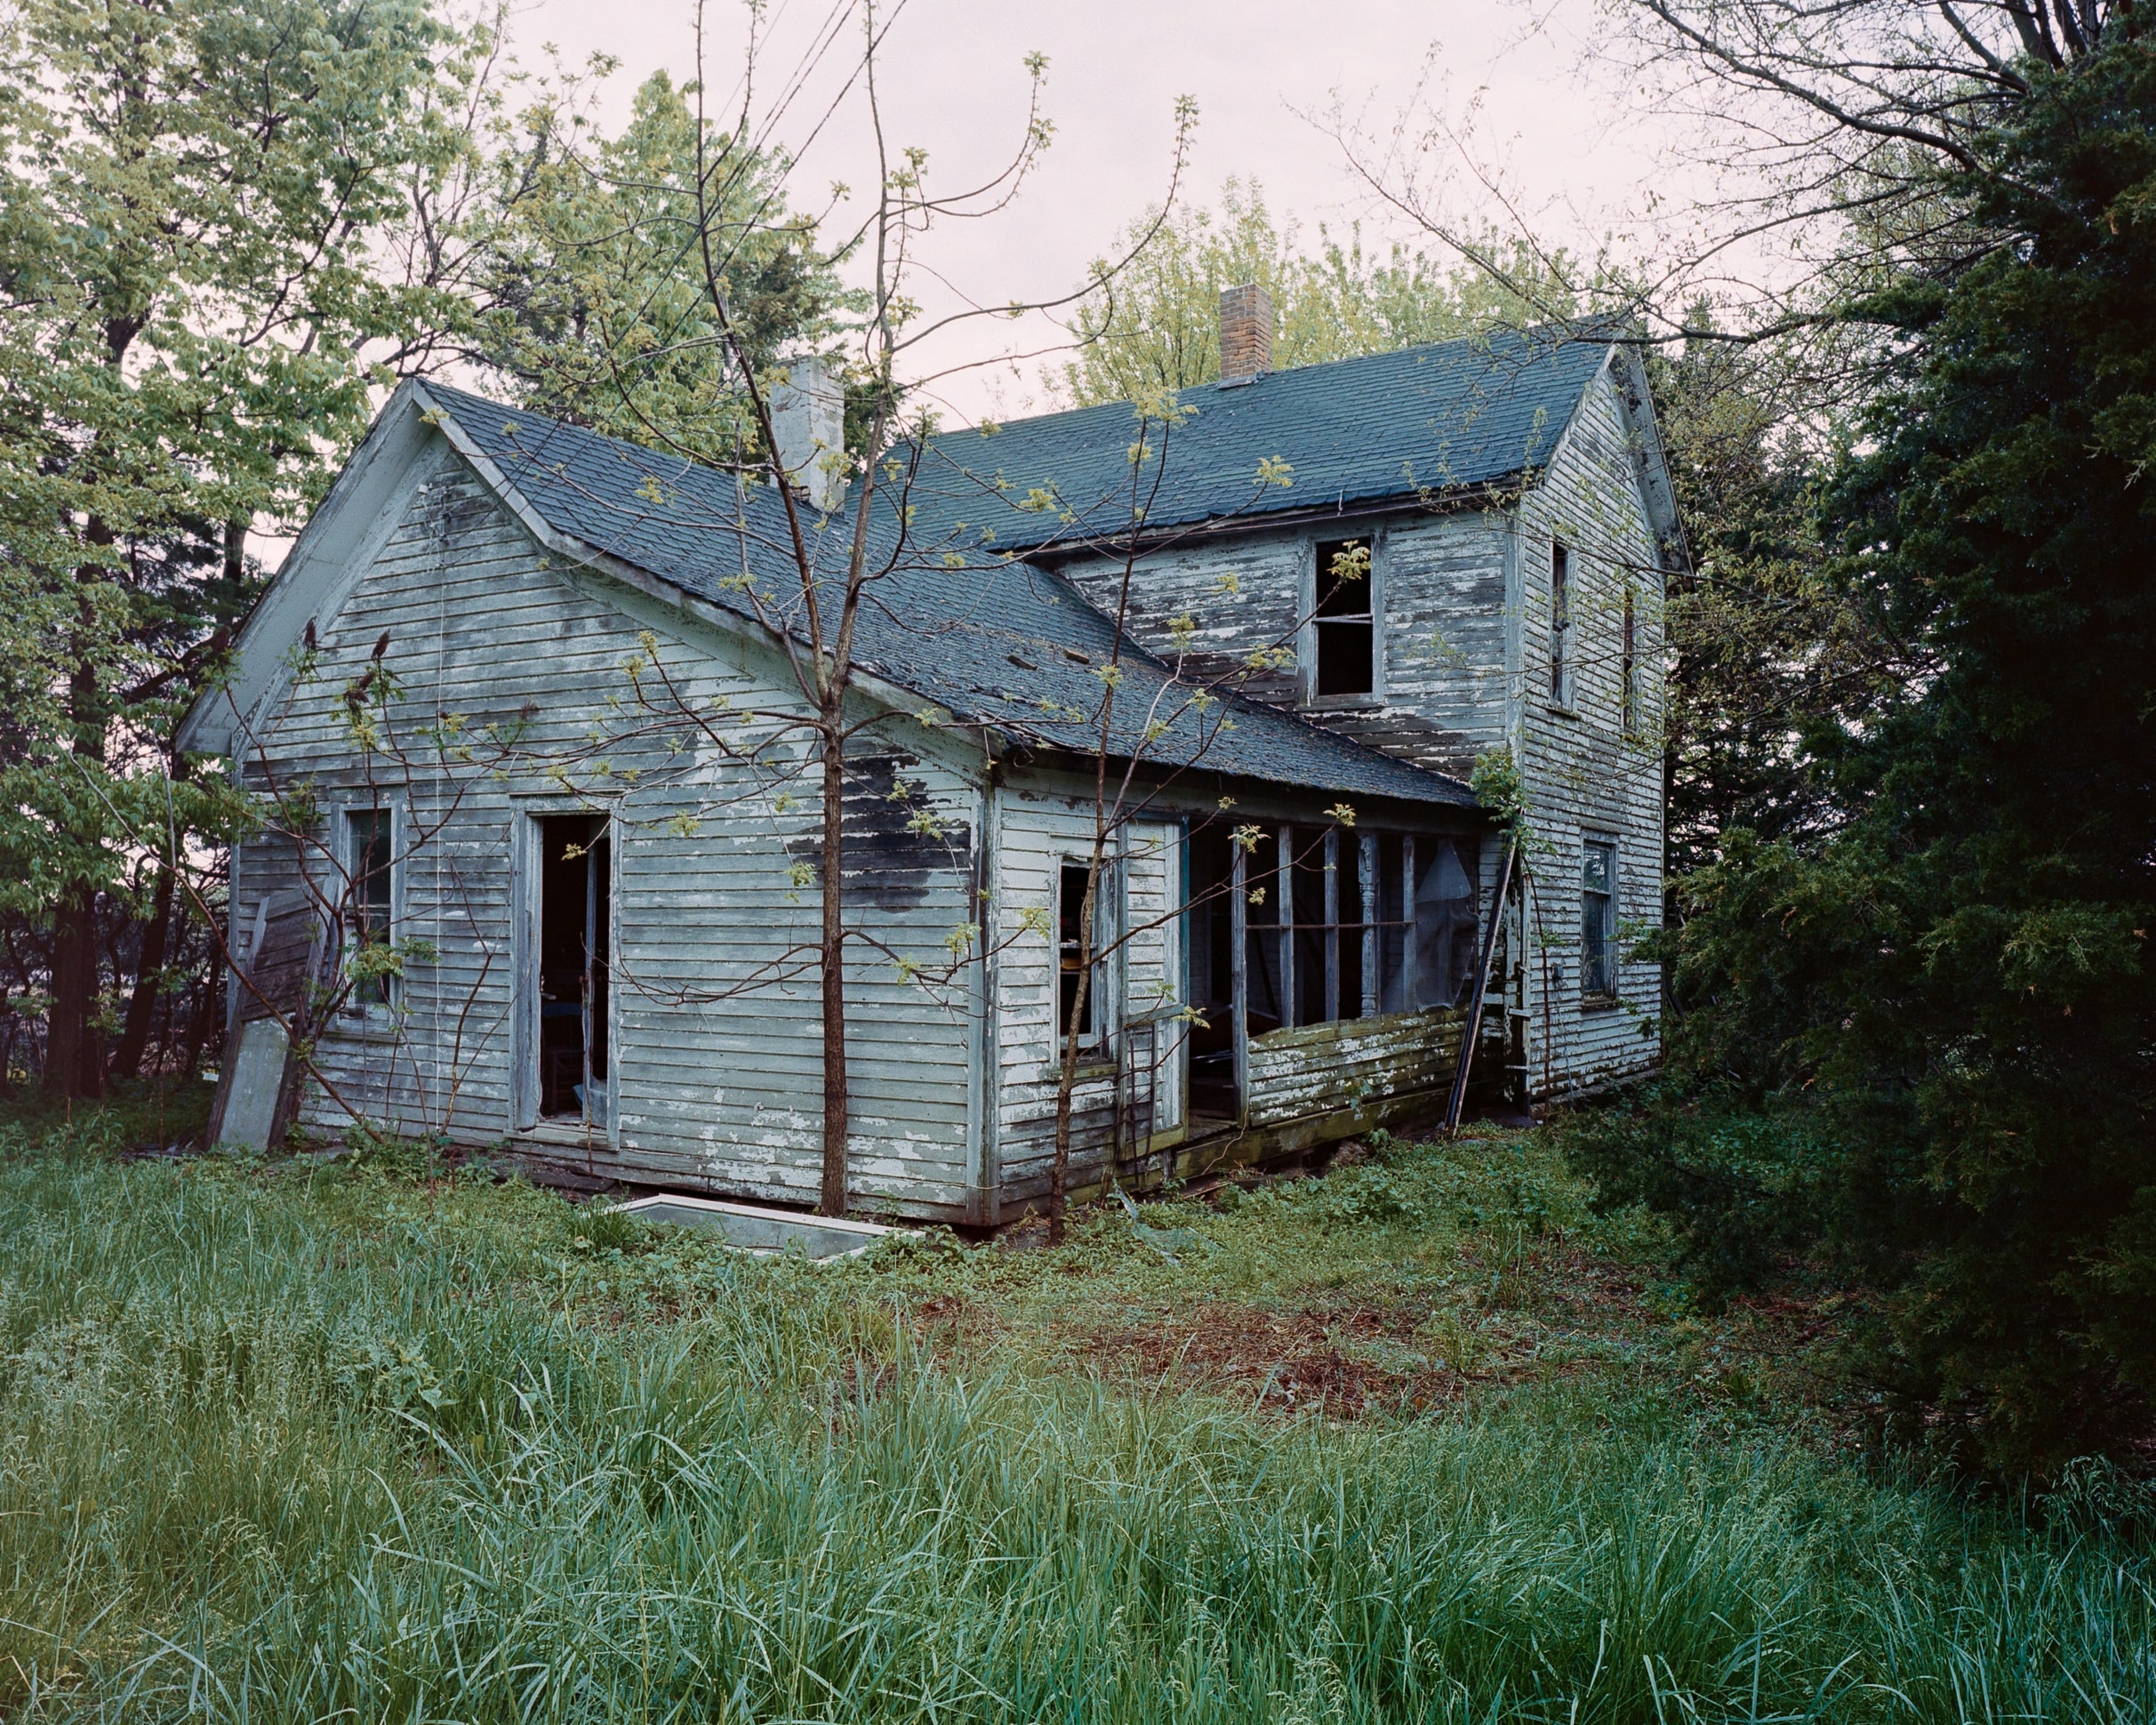 descriptive essay about an abandoned house